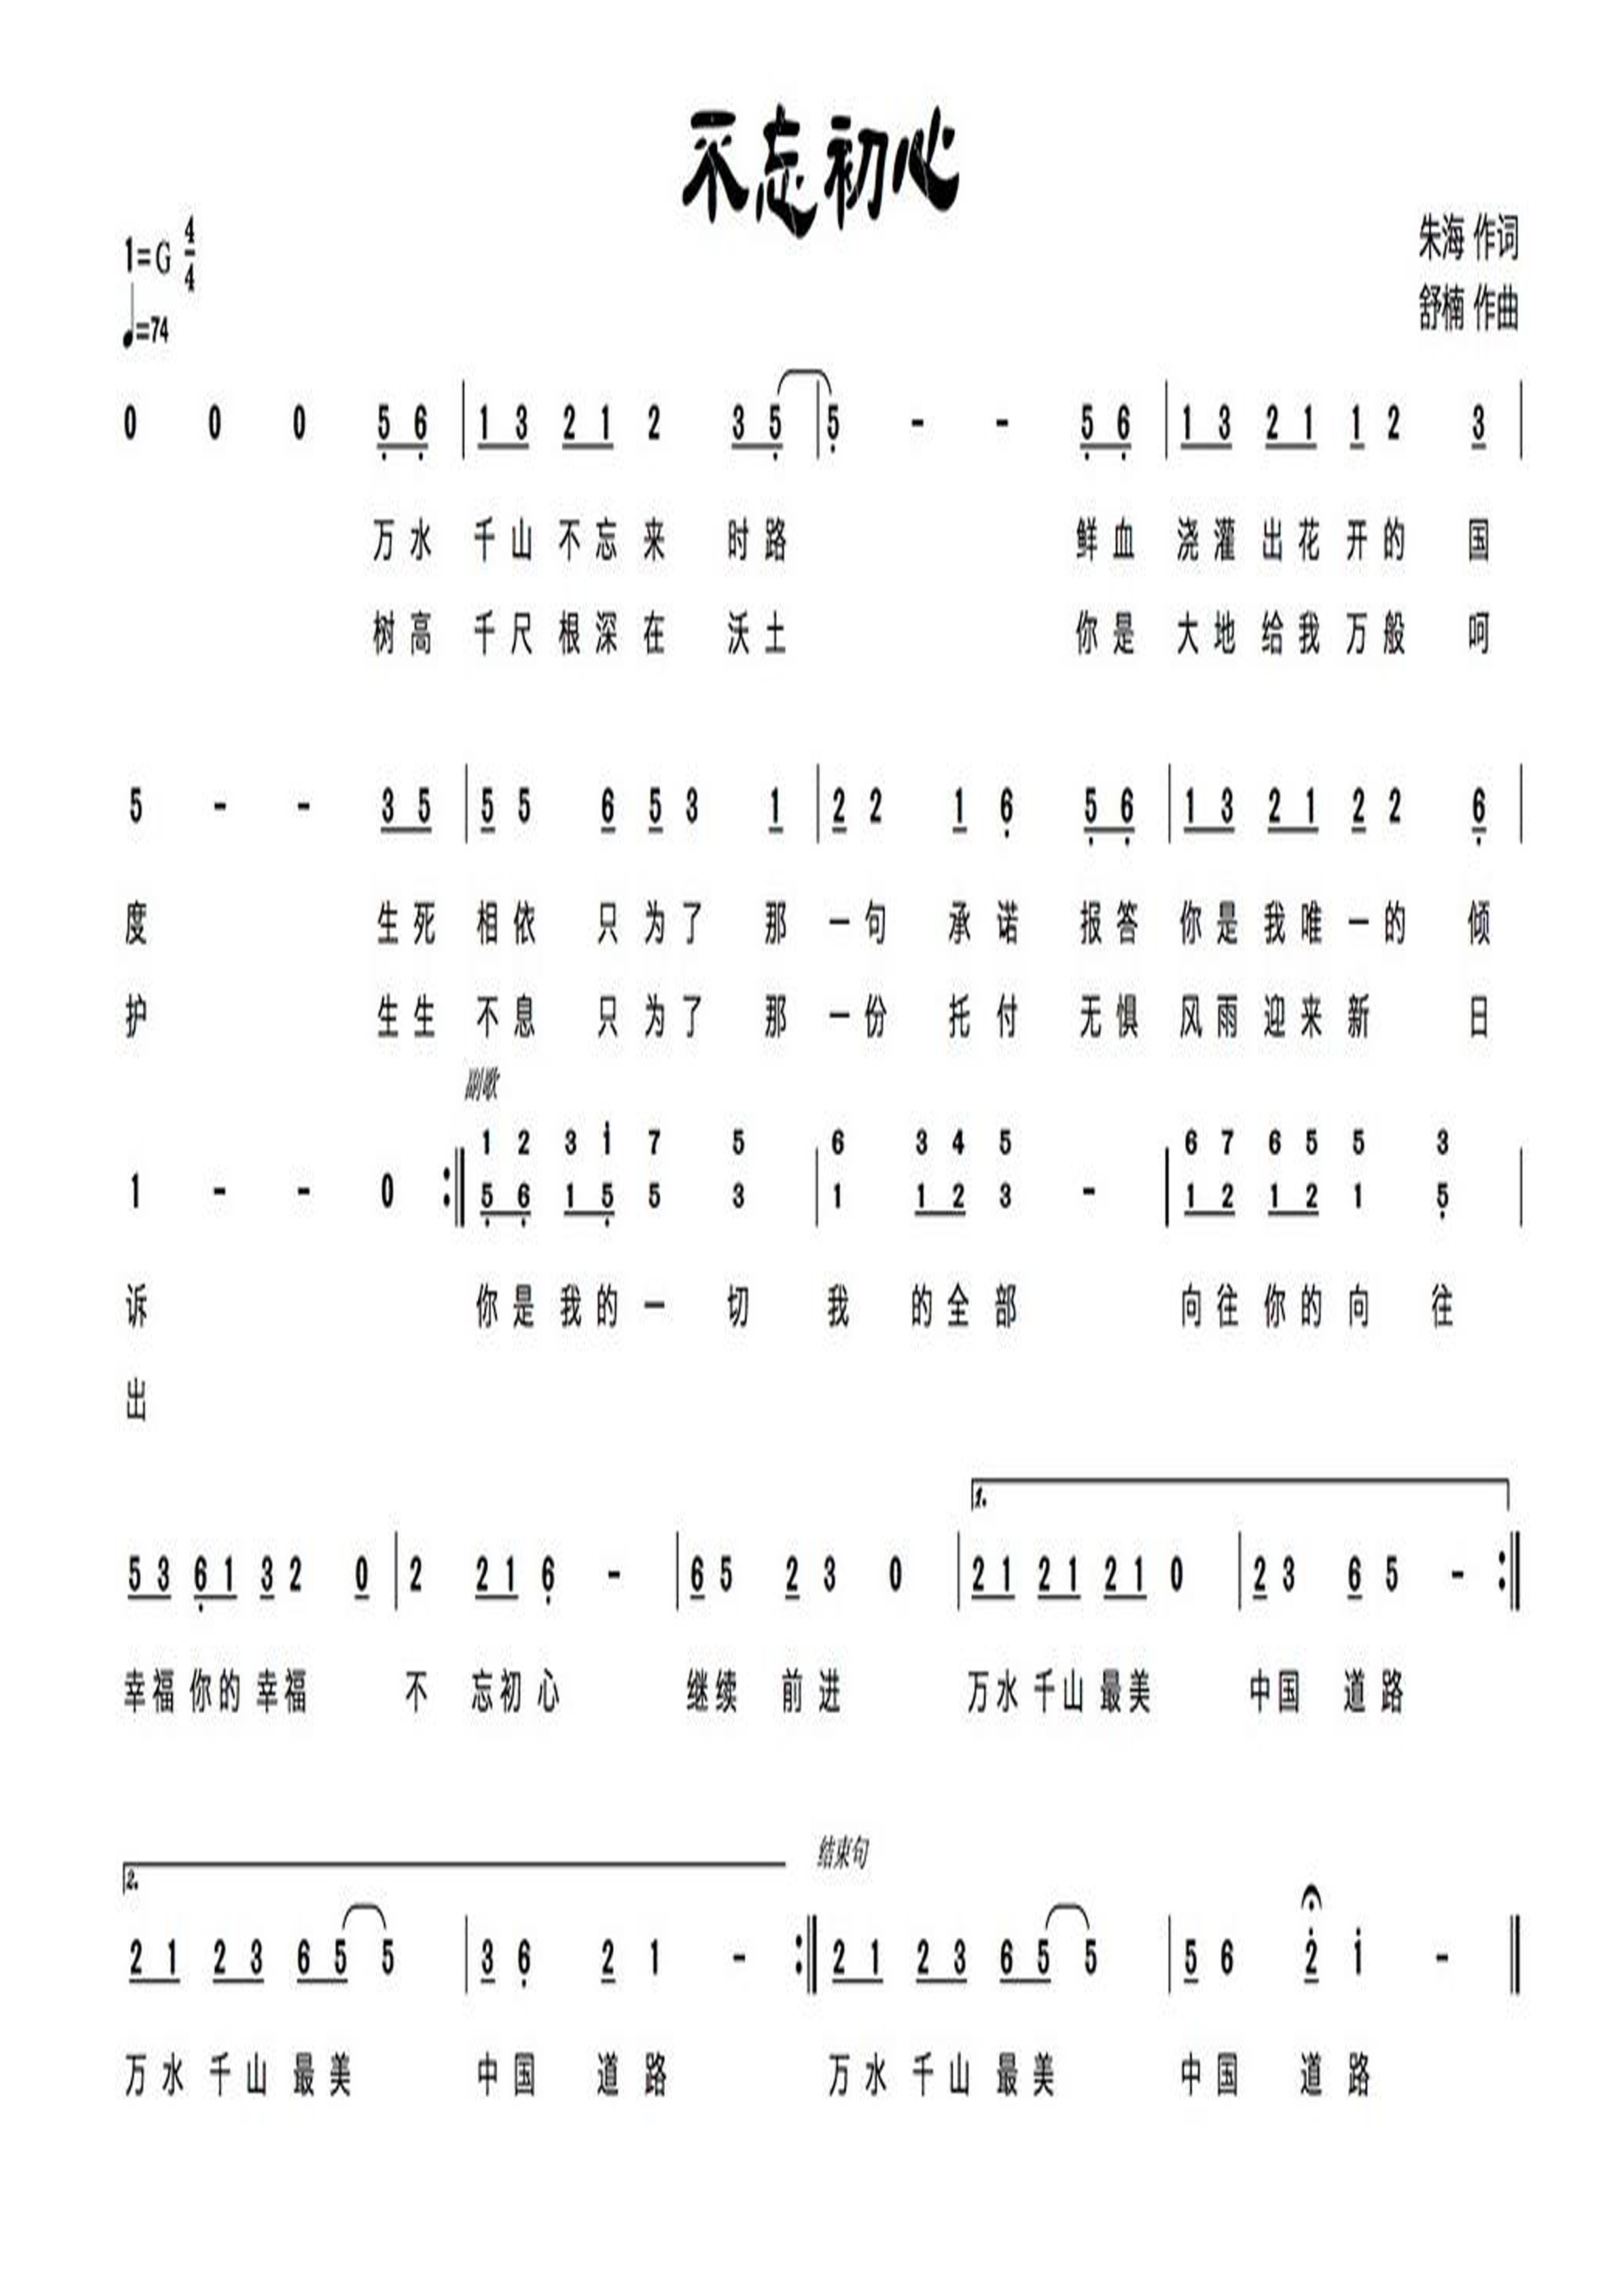 翻唱 不忘初心(1722 )  演唱:长长长销(鲁金) 原唱:歌友 分类:翻唱